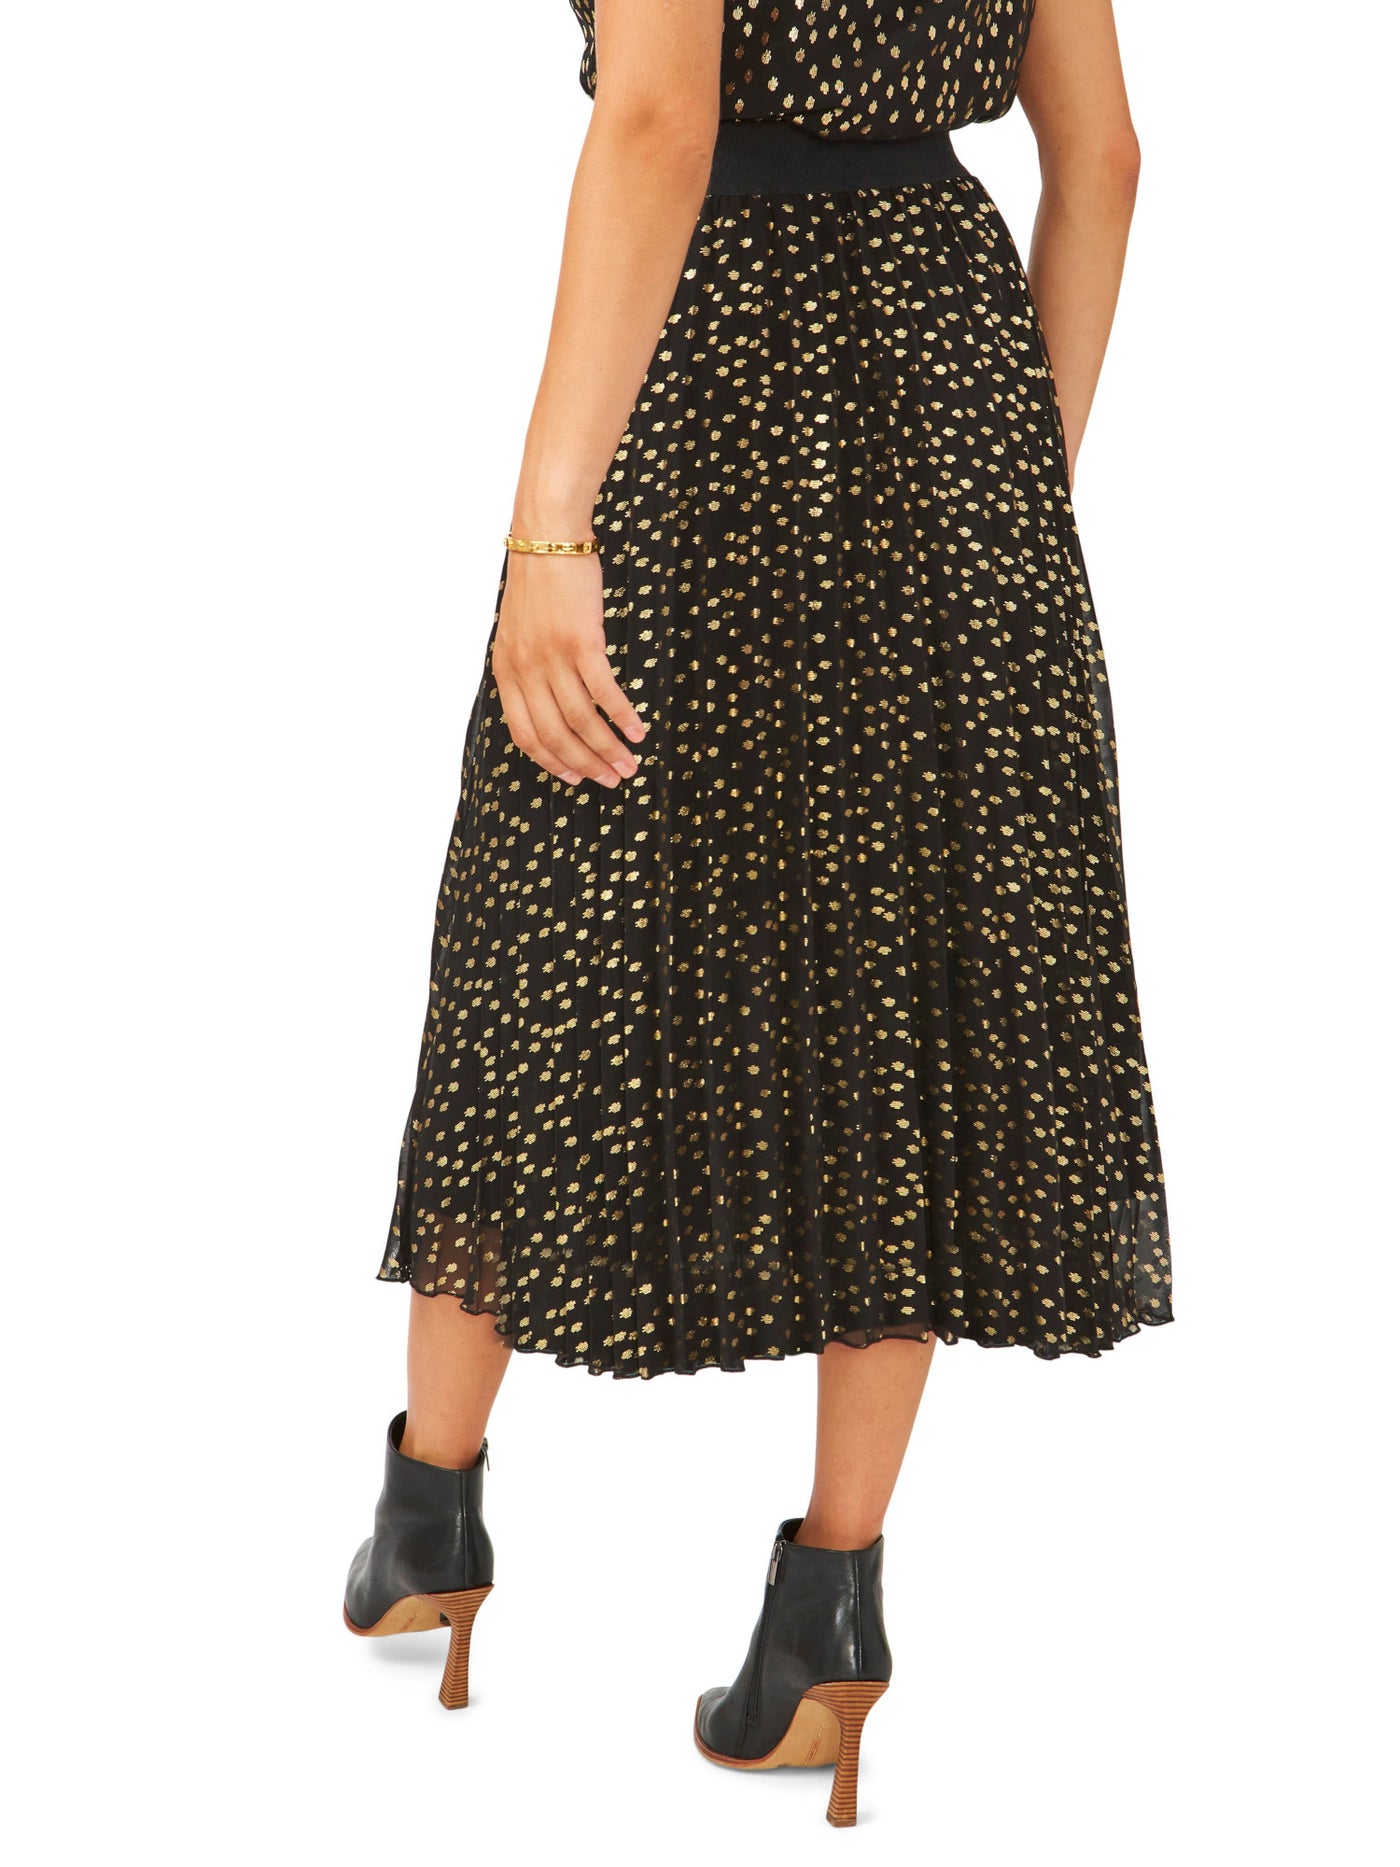 VINCE CAMUTO Womens Black Lined Elastic Waist Pull-on Printed Midi Pleated Skirt M